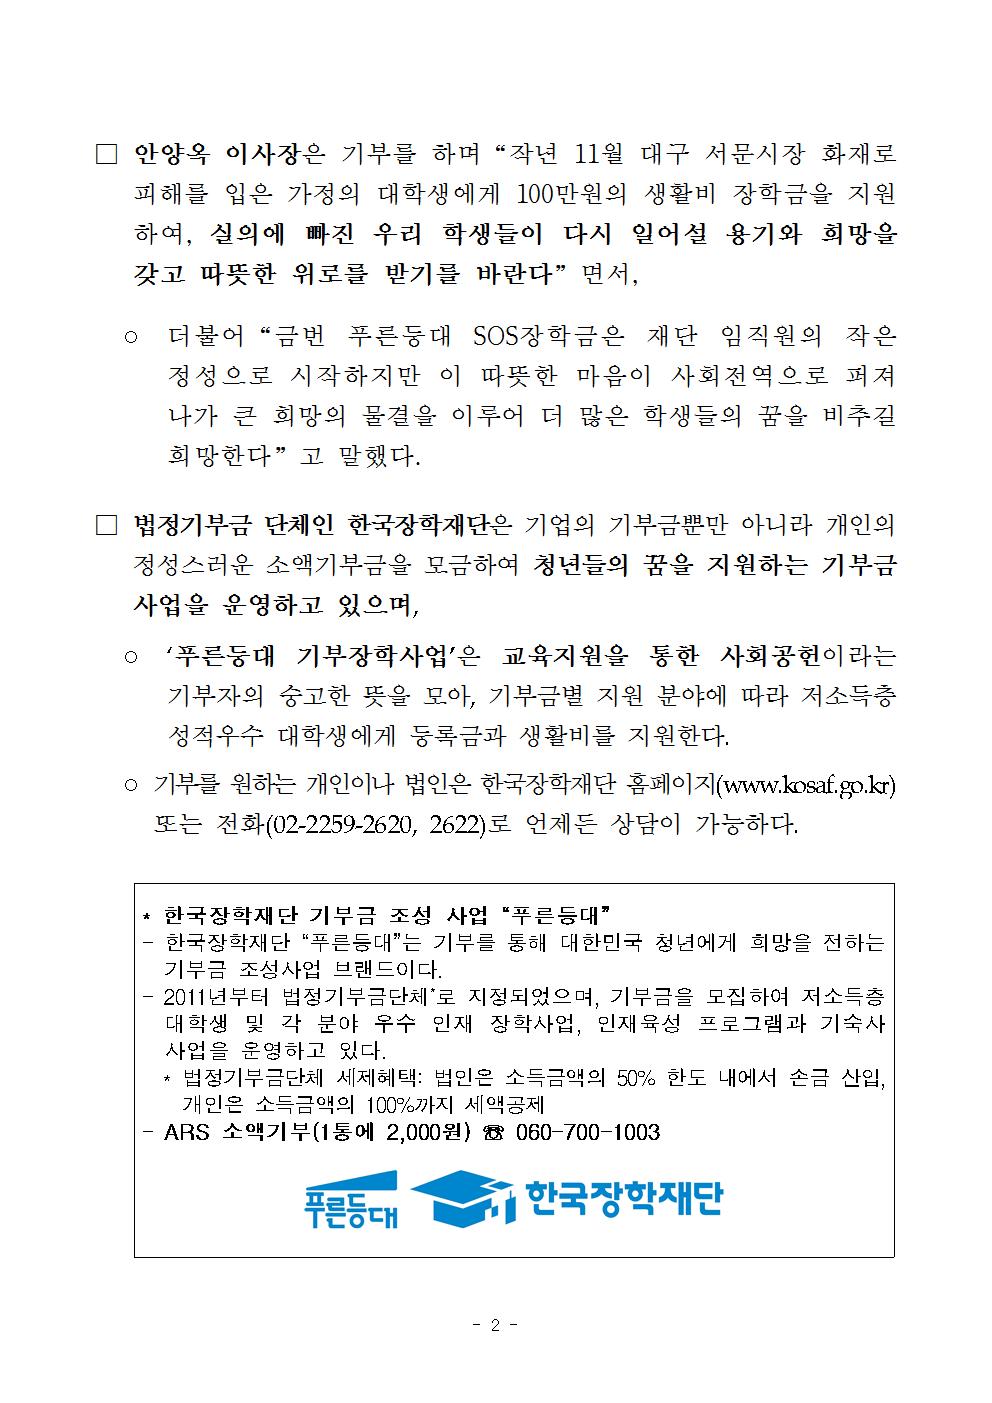 08-01(화)[보도자료] 한국장학재단, 푸른등대 SOS장학금 지원002.jpg